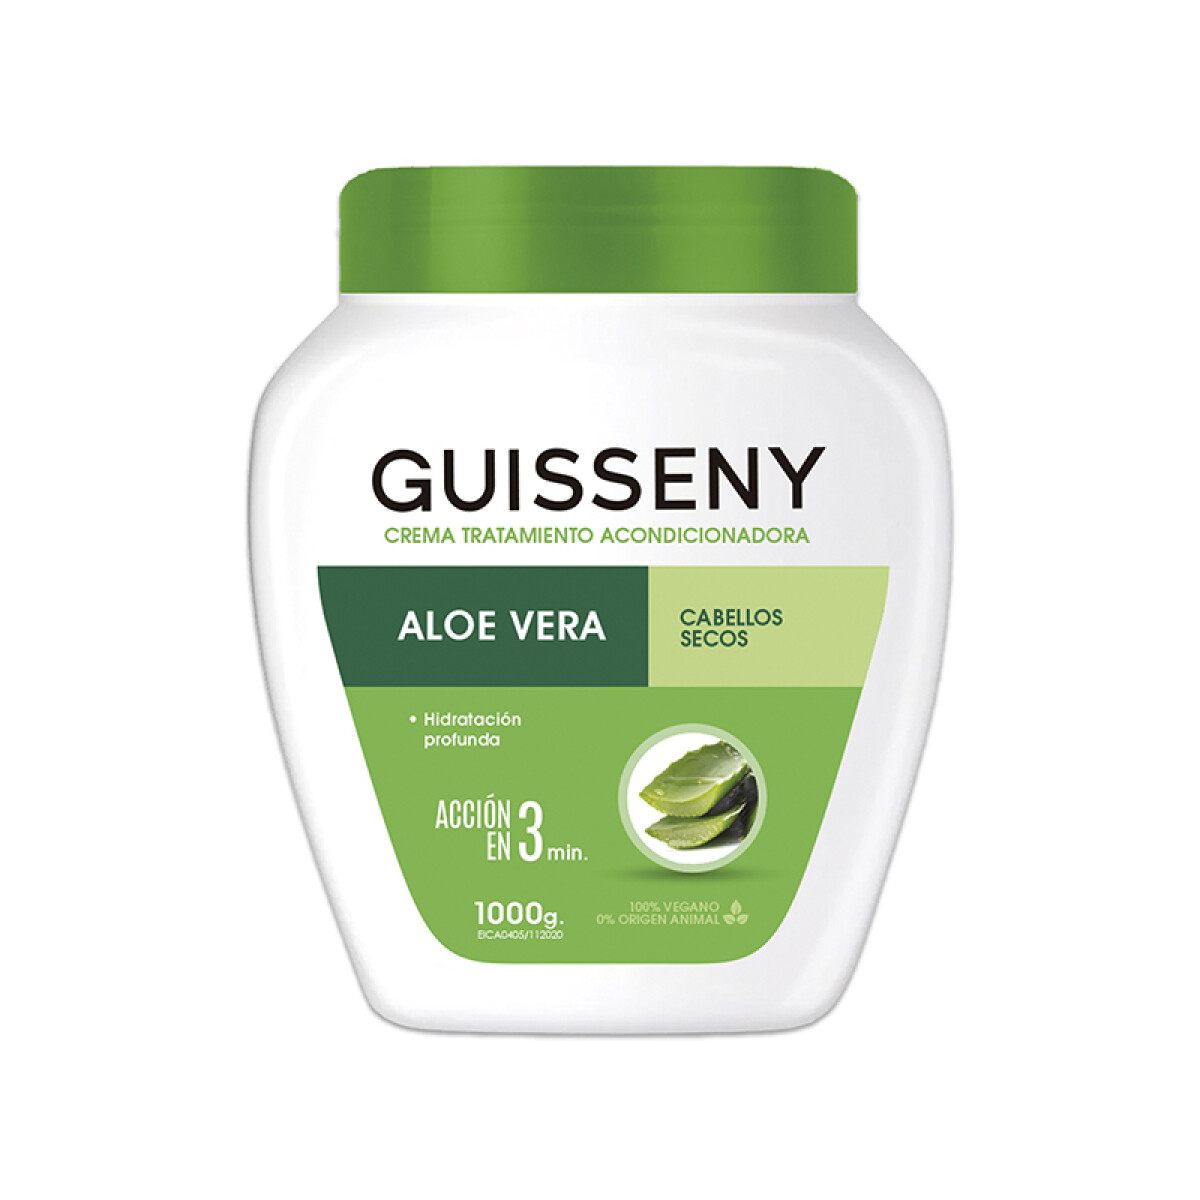 Crema tratamiento capilar 1000 g Guisseny - Aloe vera 